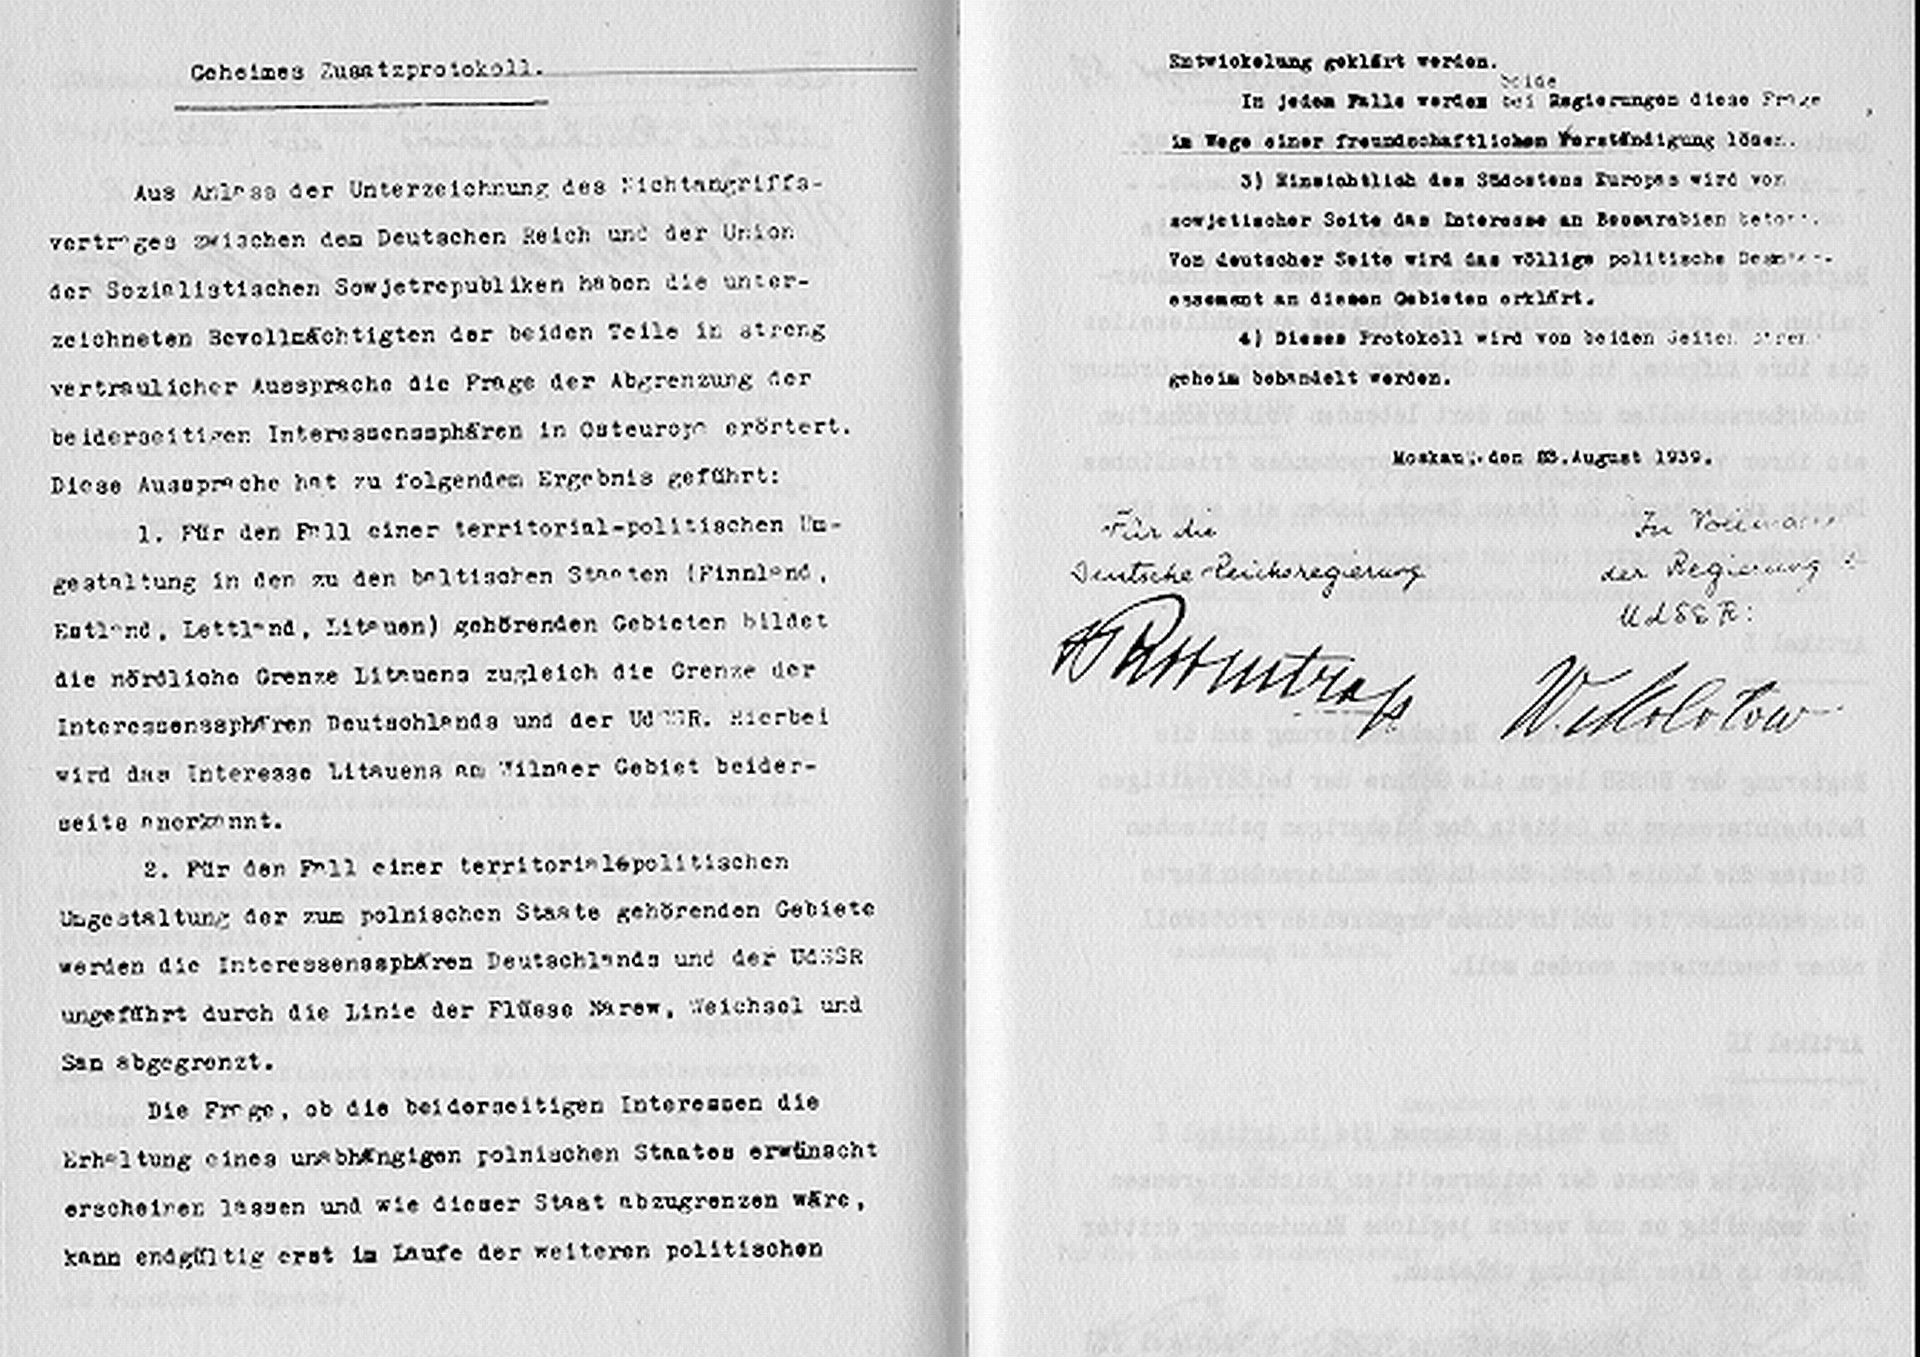 Das Geheimprotokoll zum deutsch-sowjetischen Nichtangriffspakt vom 23. August 1939, unterzeichnet von den Aussenministern Ribbentrop und Molotow. (Quelle: Wikipedia) 